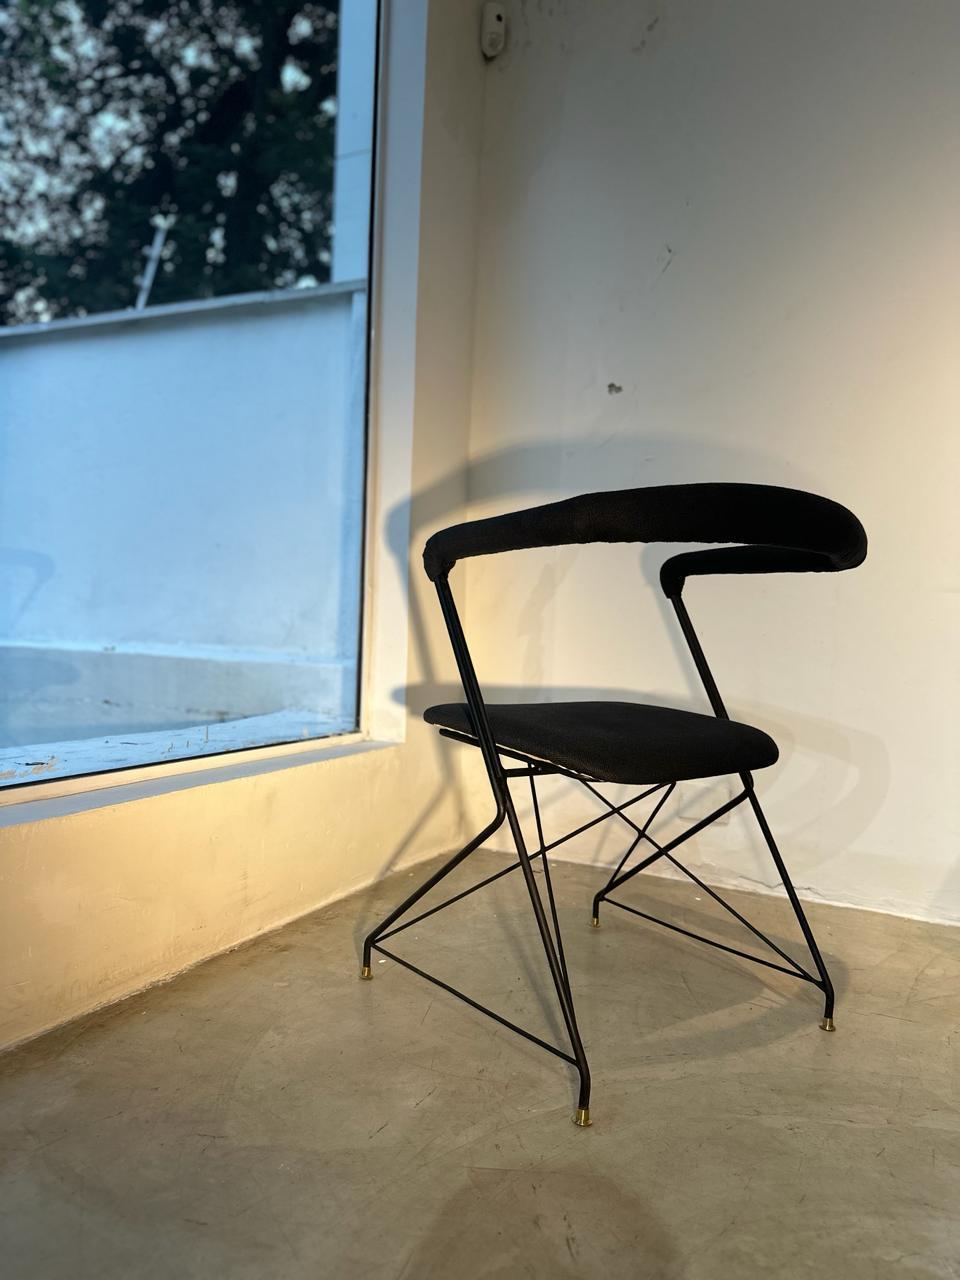 Fauteuil extrêmement rare avec une structure en fer et un rembourrage moulé, extrêmement confortable. Cette chaise est un bon exemple de l'avant-gardisme du design mobilier au milieu des années 1950.  Il a été acquis directement auprès de la famille